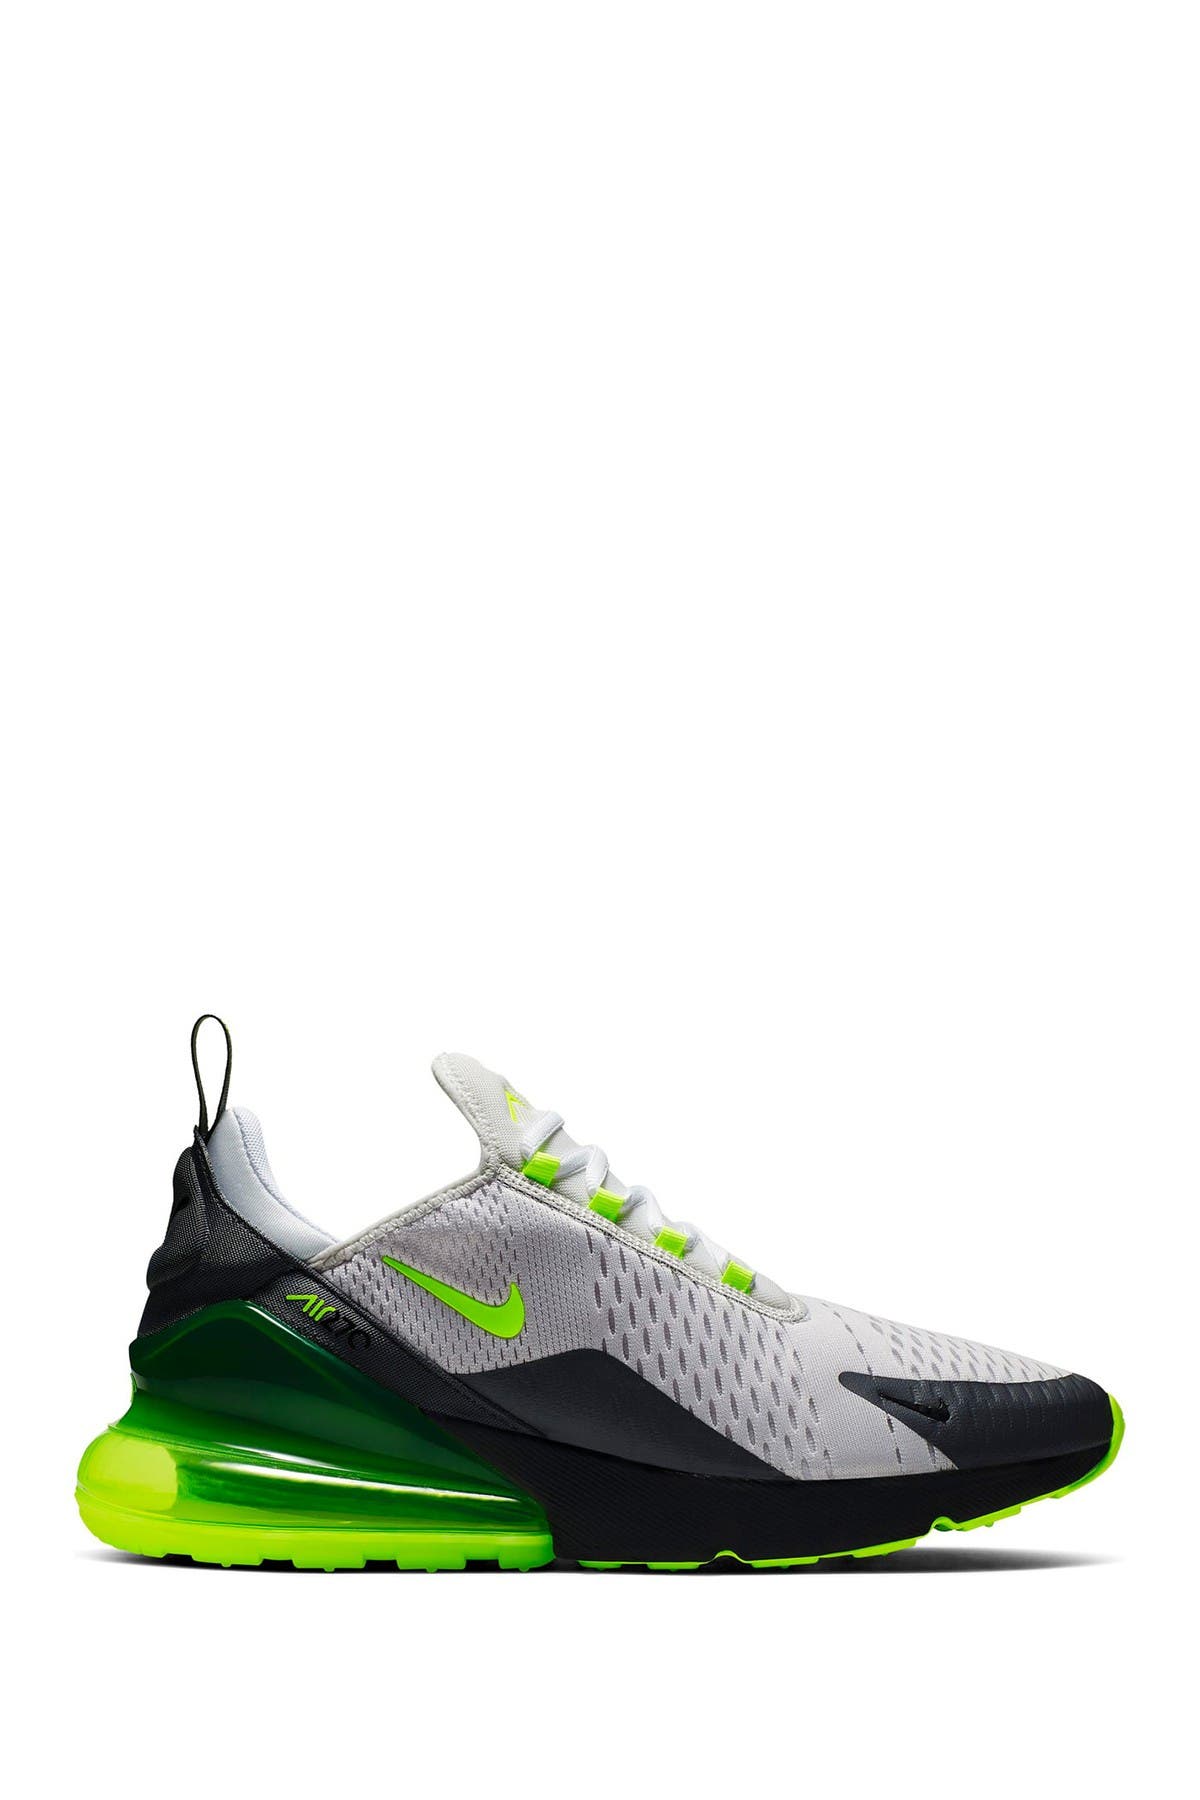 Nike | Air Max 270 Sneaker | Nordstrom Rack